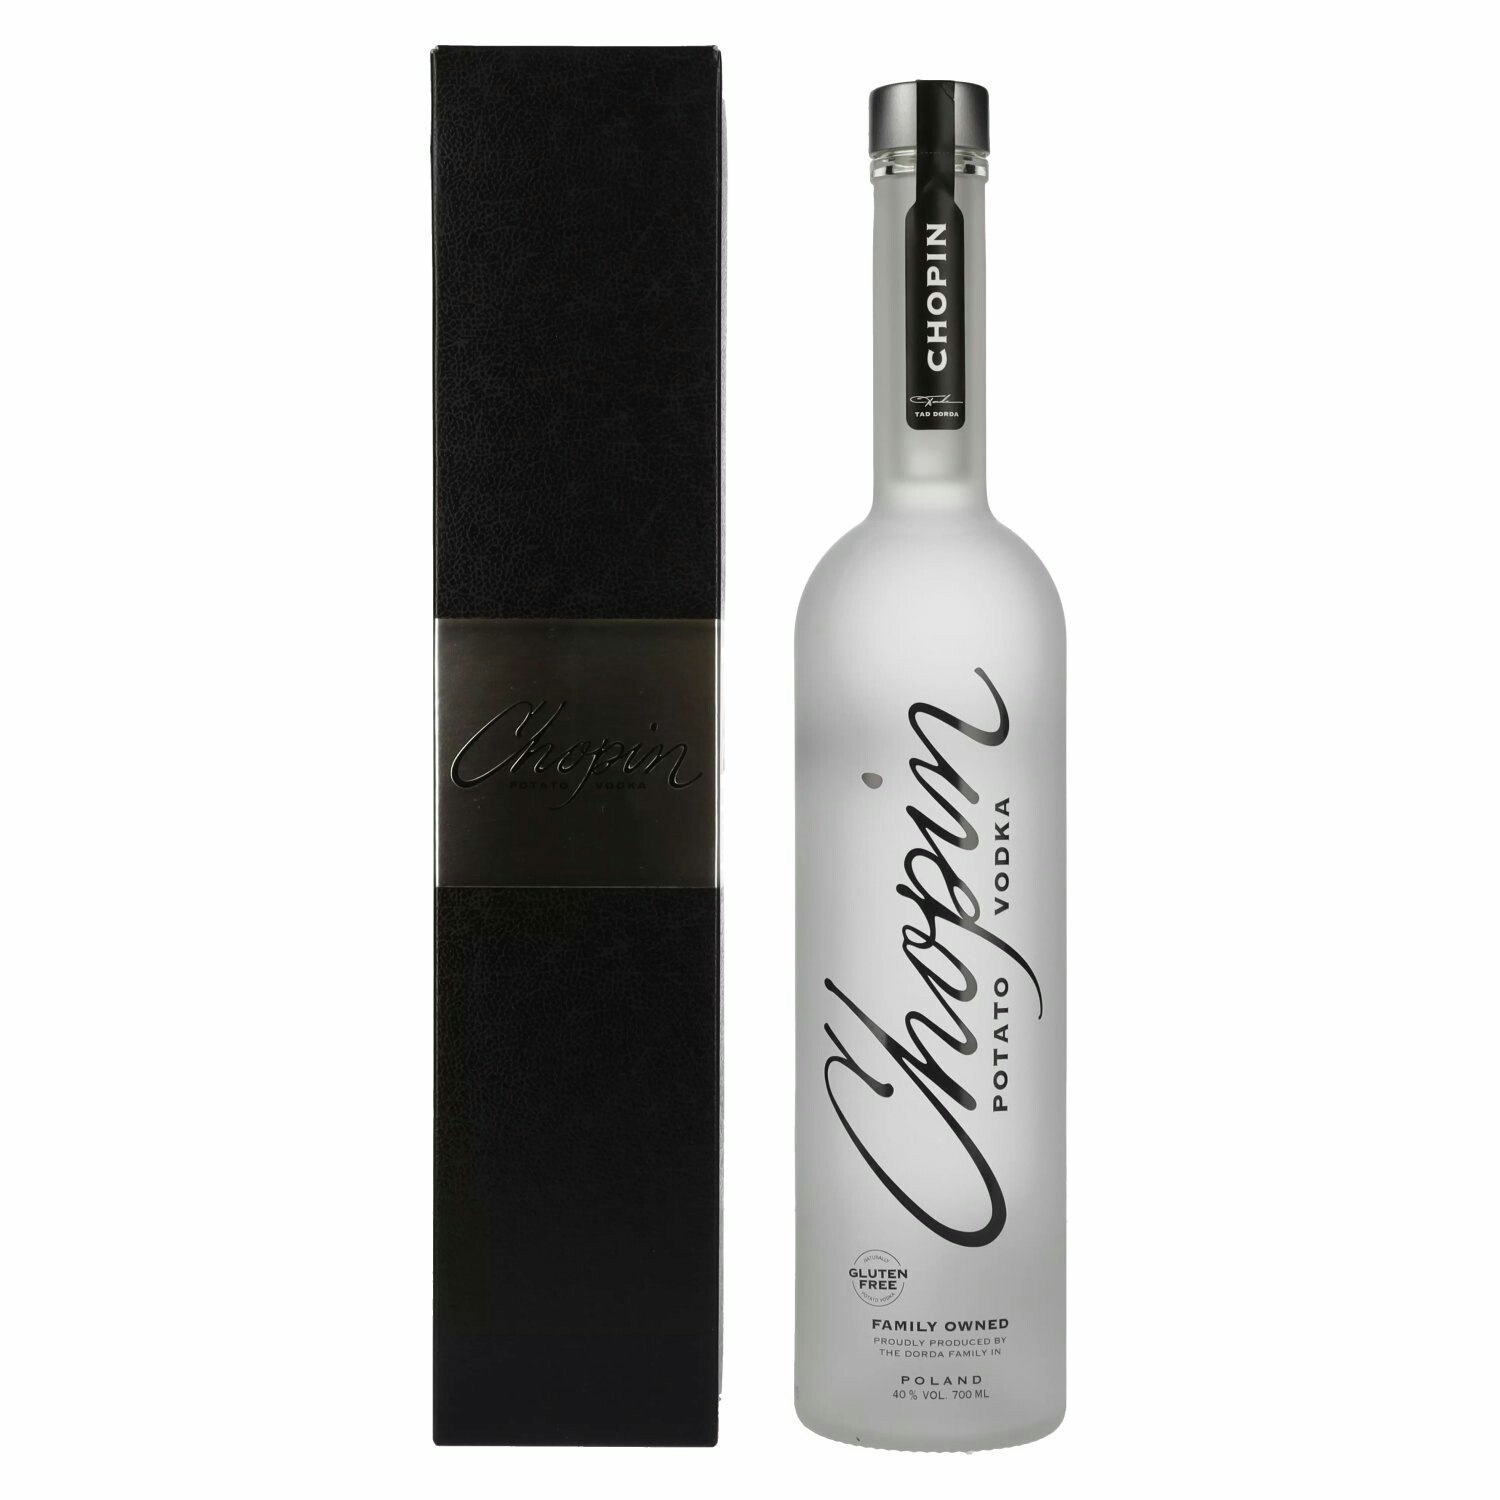 Chopin Potato Vodka 40% Vol. 0,7l in Giftbox